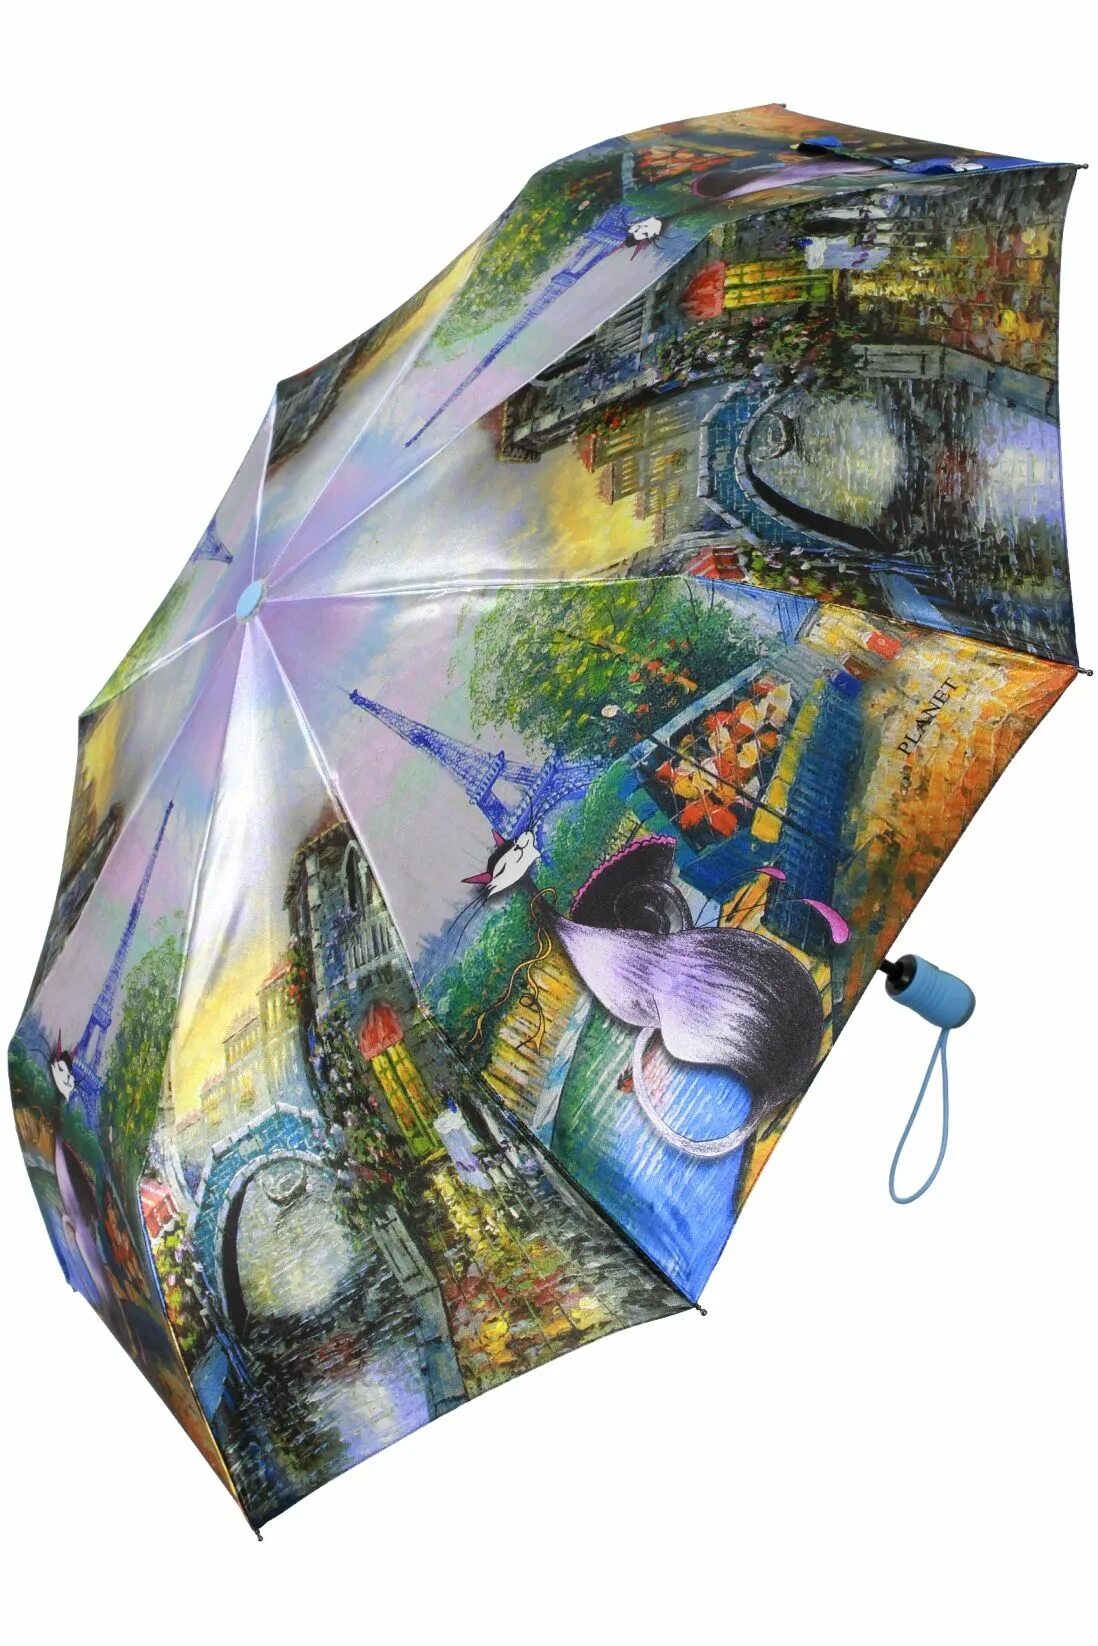 Зонт автомат антиветер женский Planet. Зонт Zest с кошками. Оригинальные зонты женские. Красивый зонт.